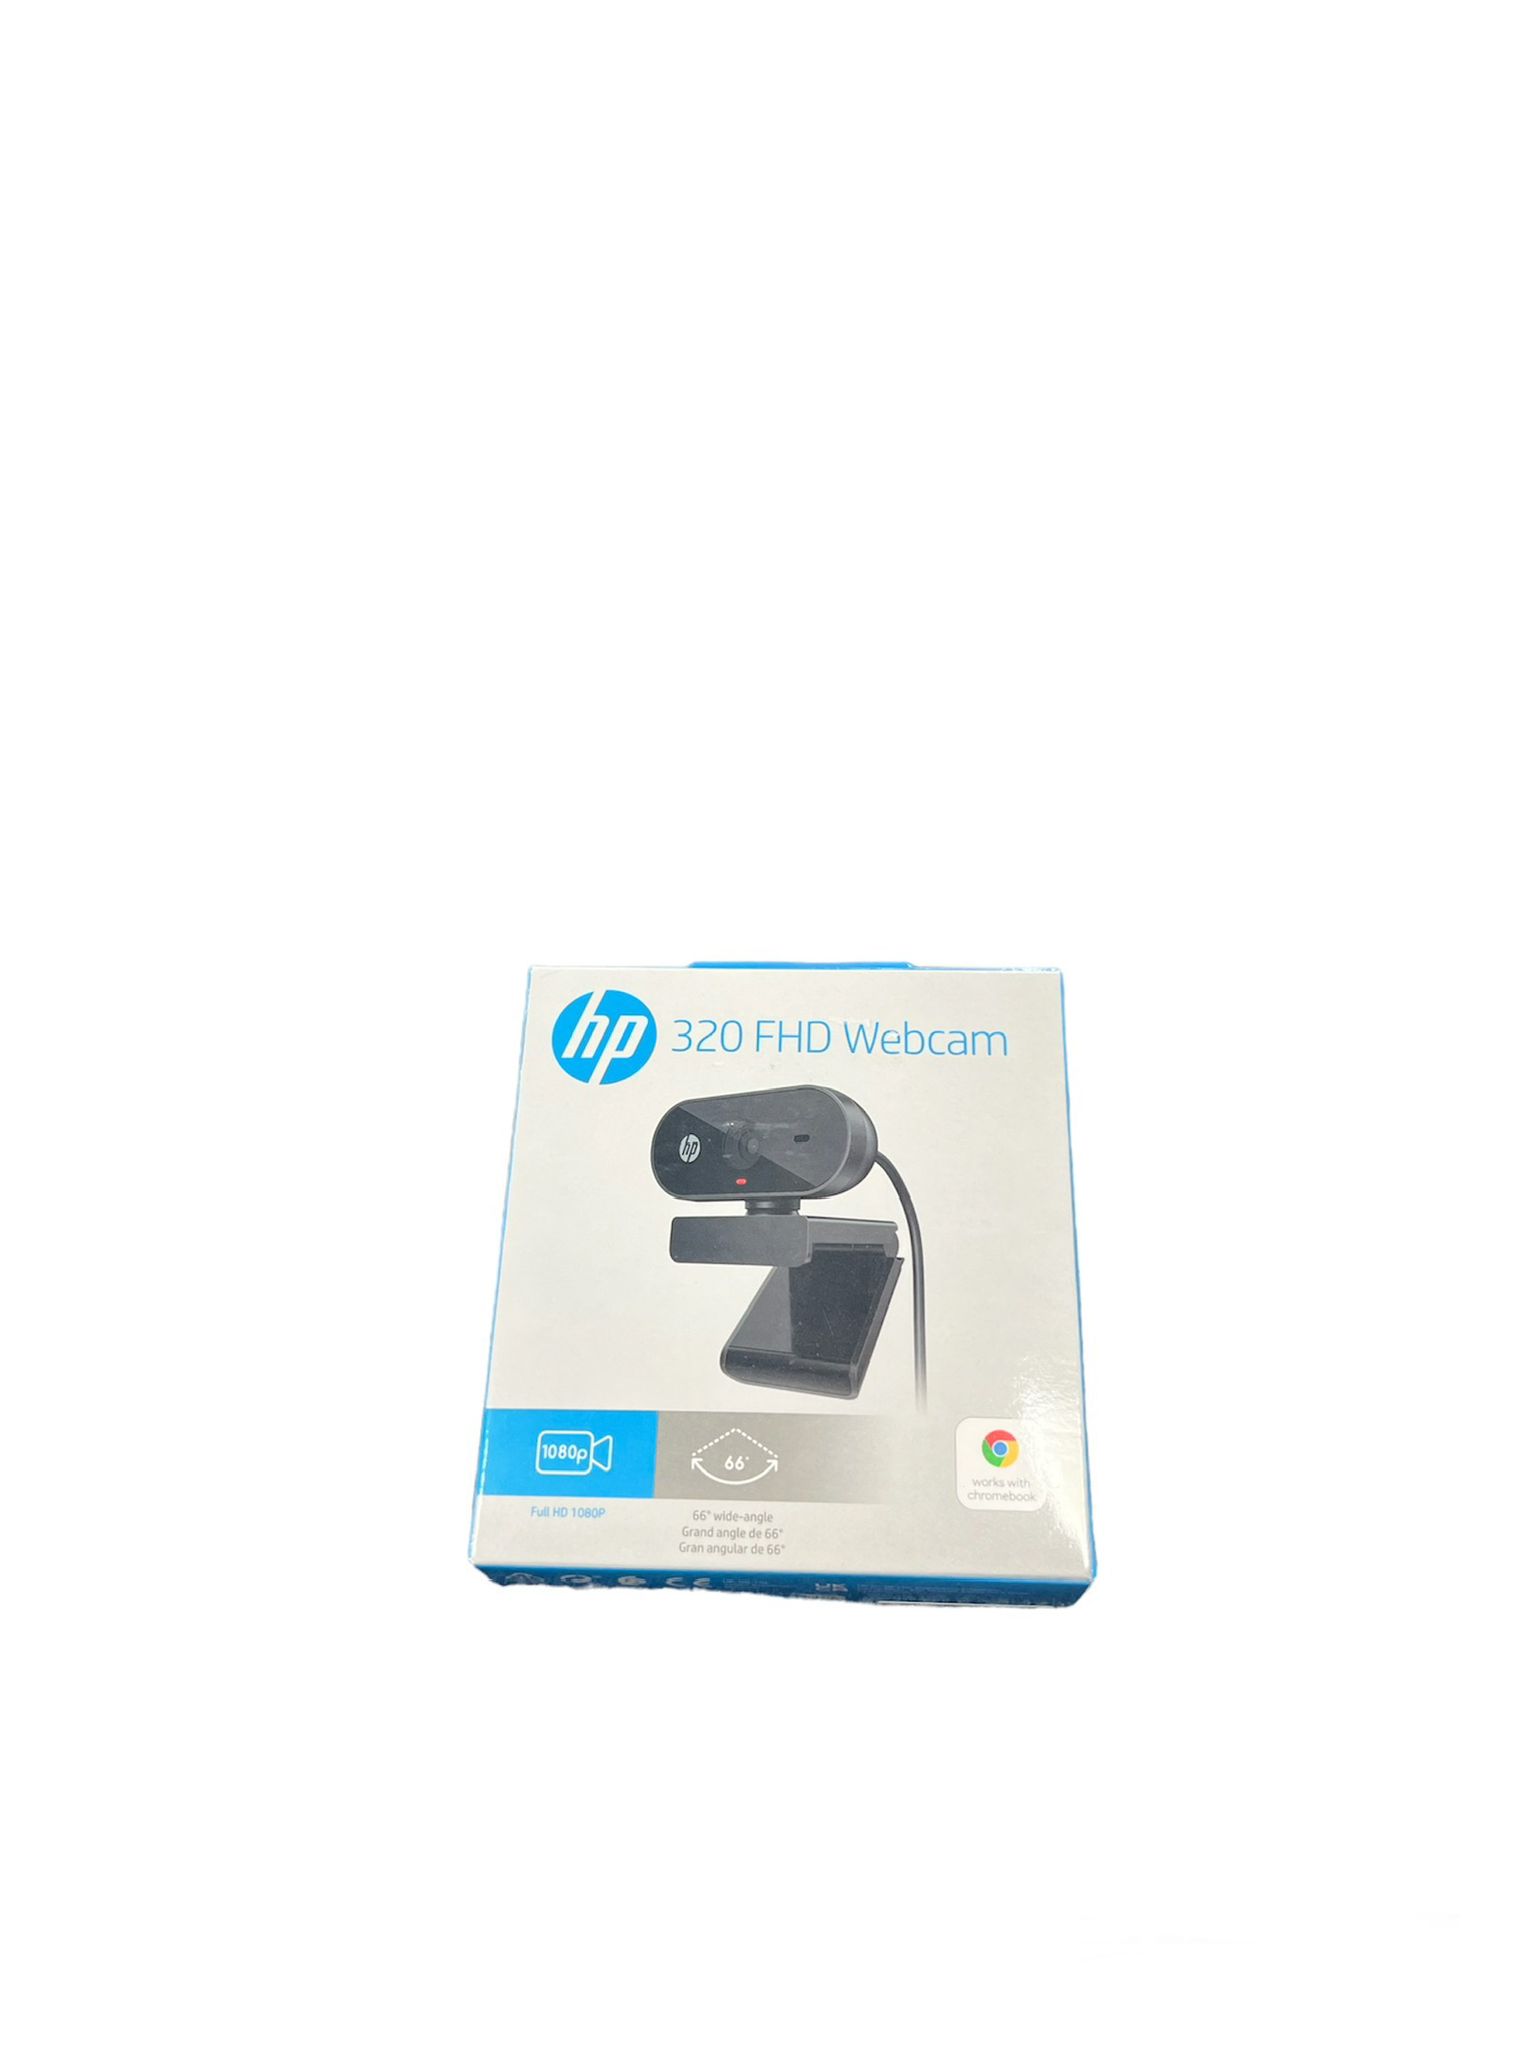 HP 320 FHD Webcam.